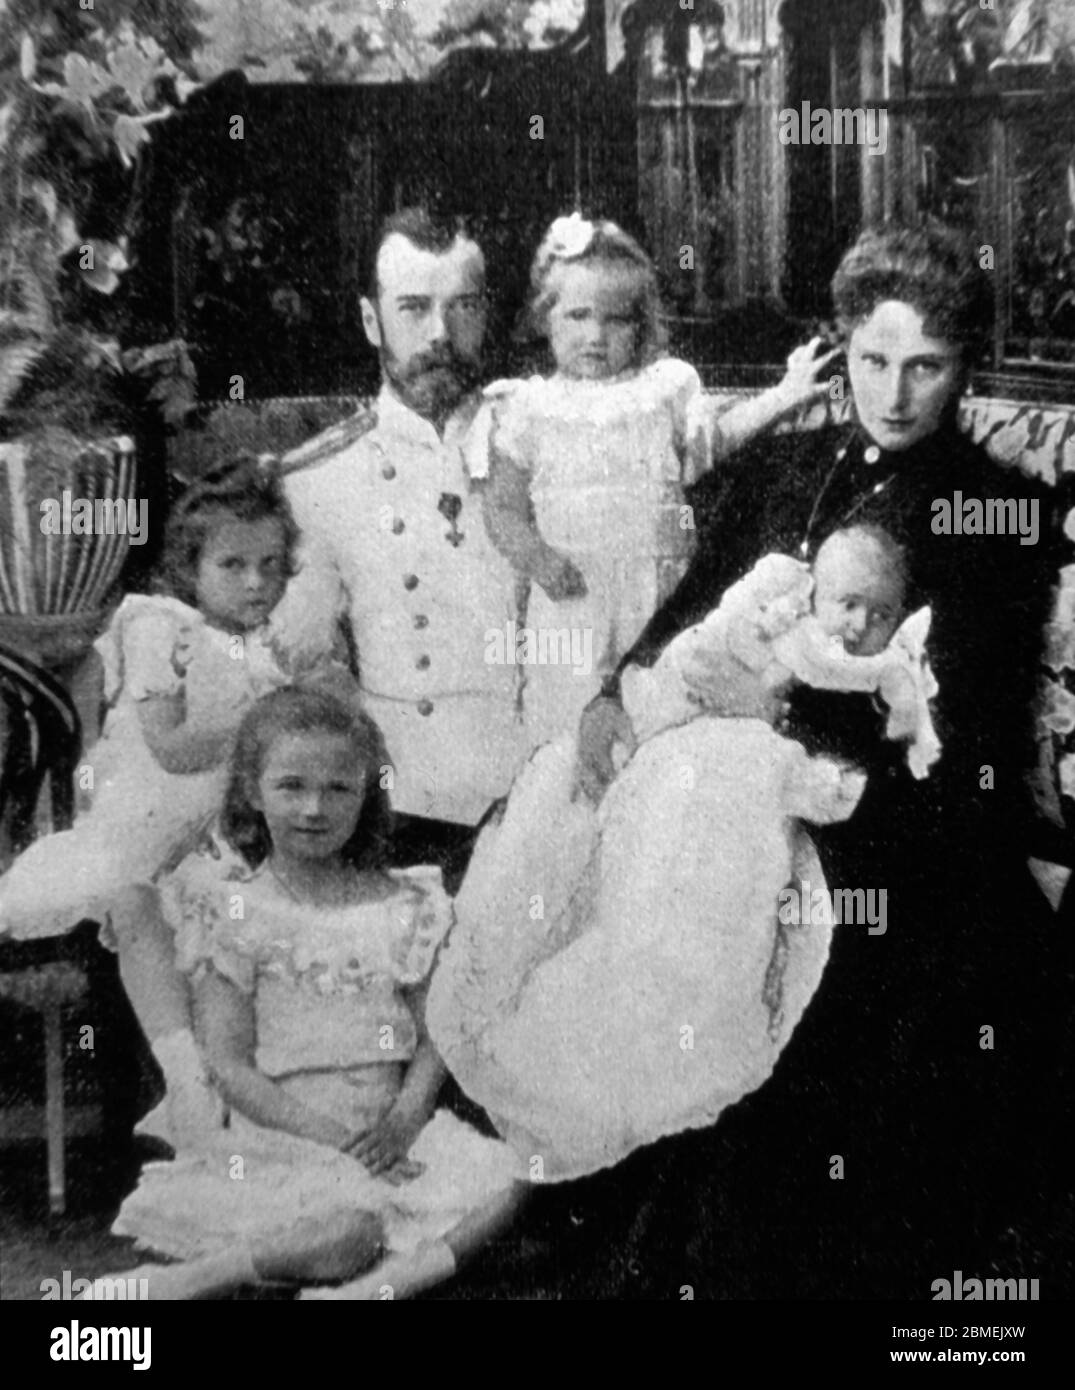 Nicolás II (1868-1918), último zar de Rusia, con su familia, su esposa, la gran duquesa Alejandra Fiodorovna Romanova (1872-1918), y sus hijas Olga Nikolaevna (1895-1918), Tatiana Nikolaevna (1897-1918), Maria Nikolaevna (1899-1918), y Anastasia Nikolaevna (1901-1918), en el año 1901. Stock Photo